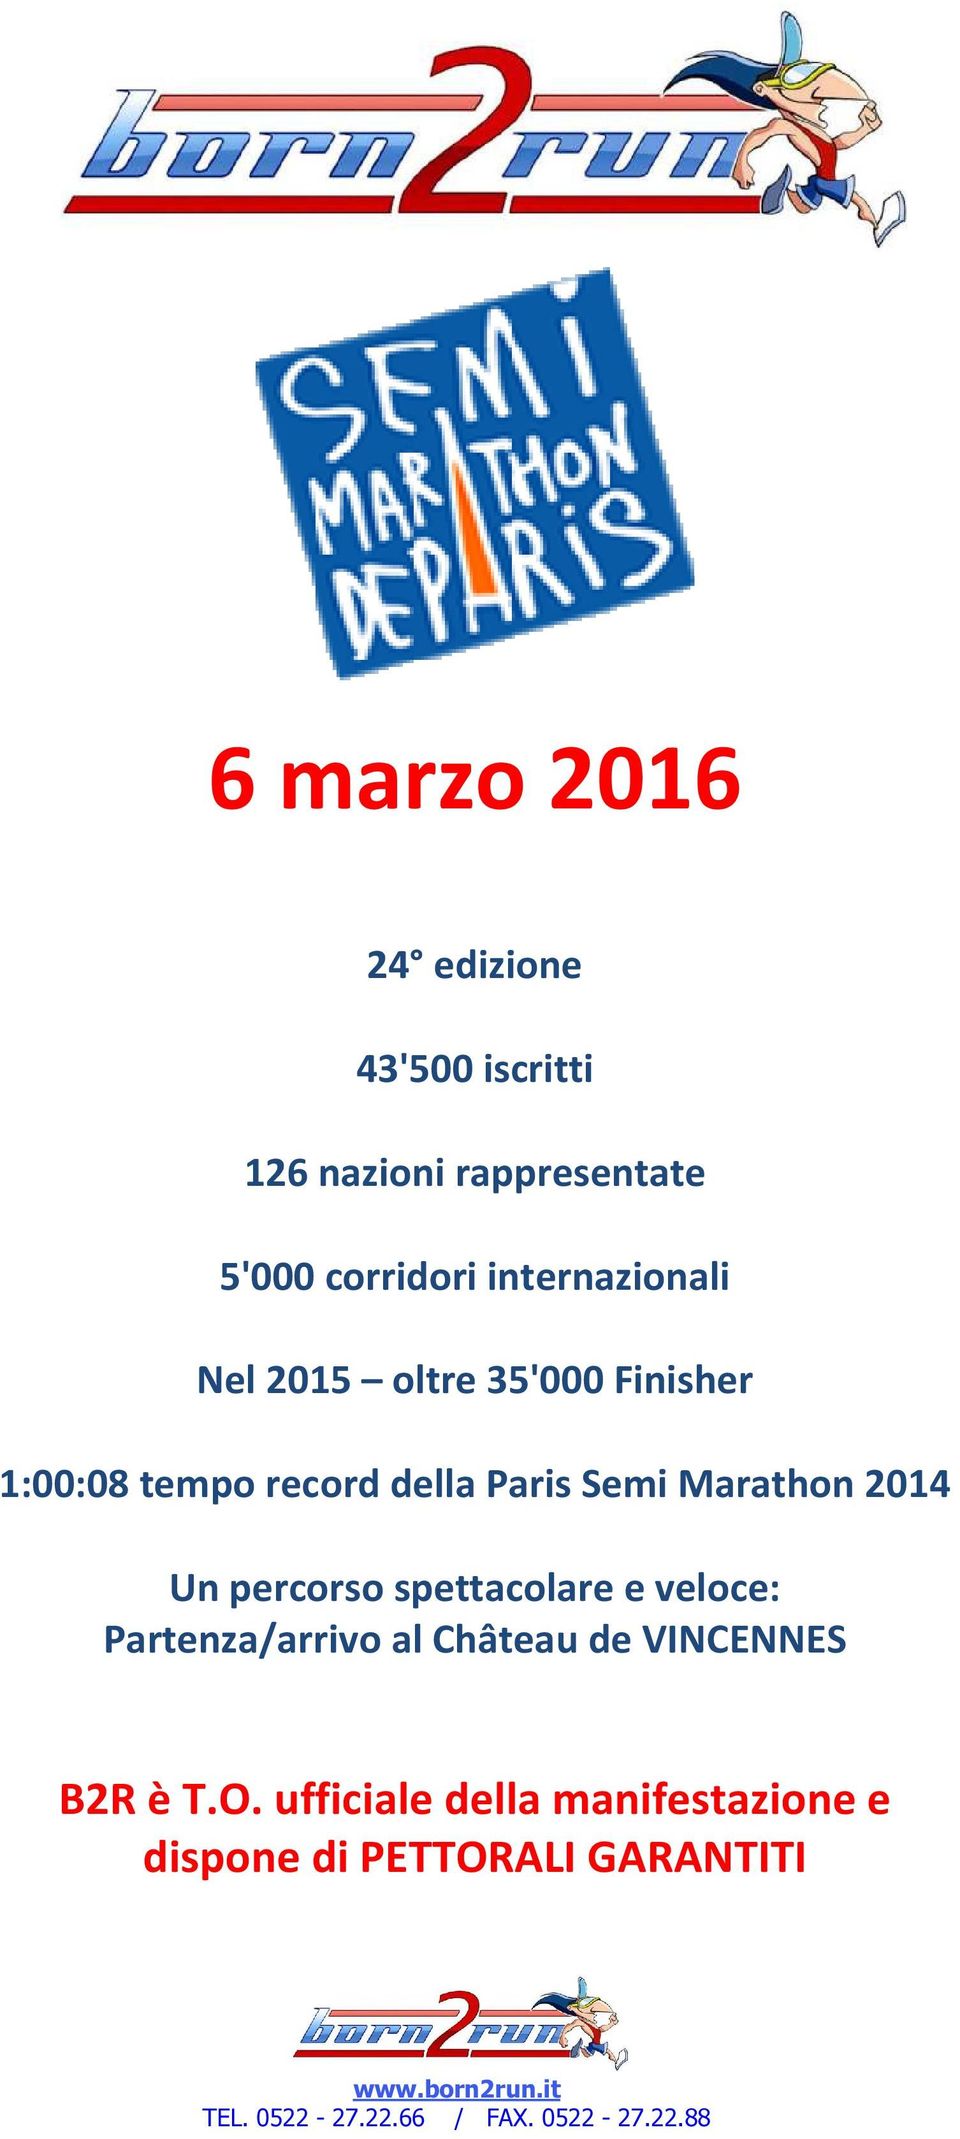 Semi Marathon 2014 Un percorso spettacolare e veloce: Partenza/arrivo al Château